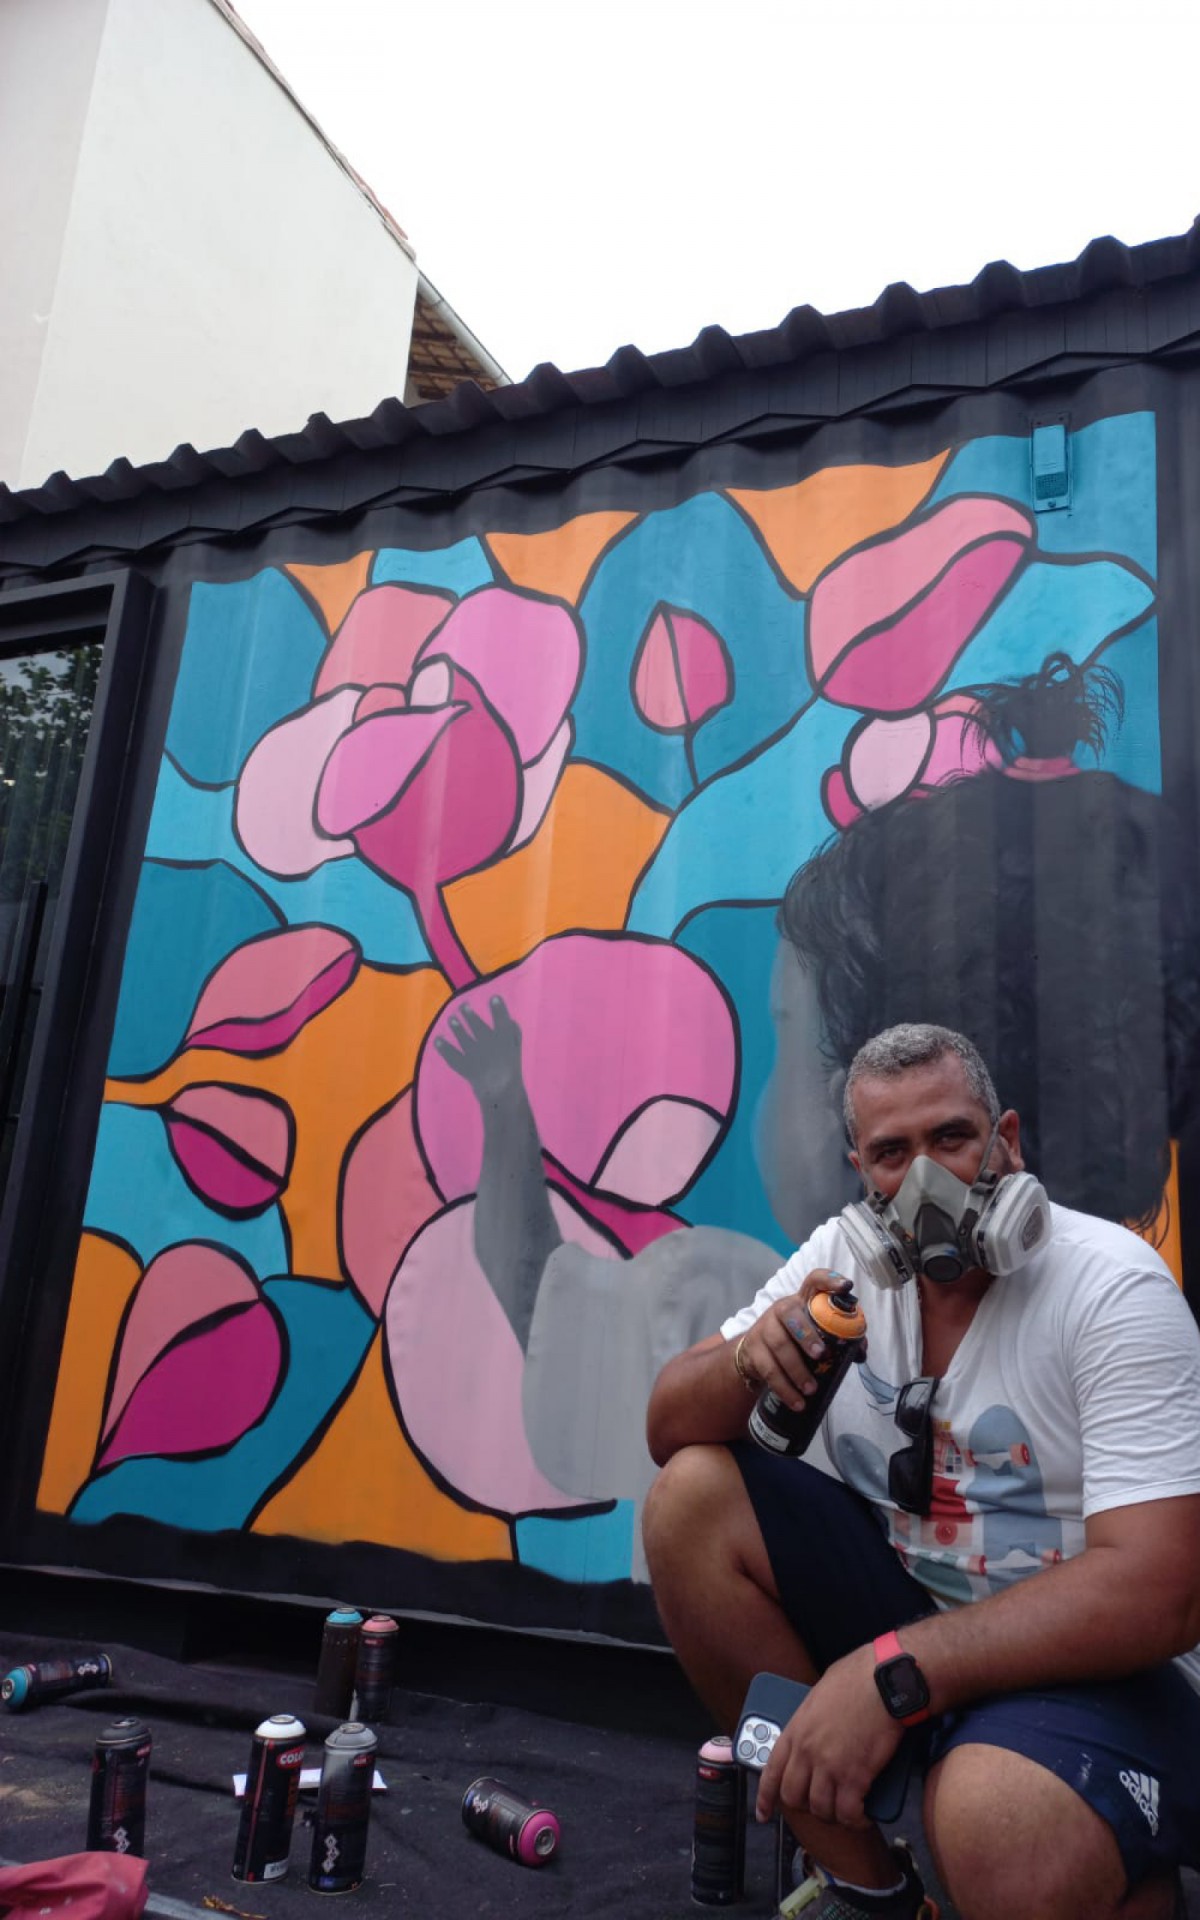 Marlon recebeu a tarefa colorir um mural na fachada de uma agência de publicidade no município da Região dos Lagos.
 - Foto: Vinicius Loureiro. 